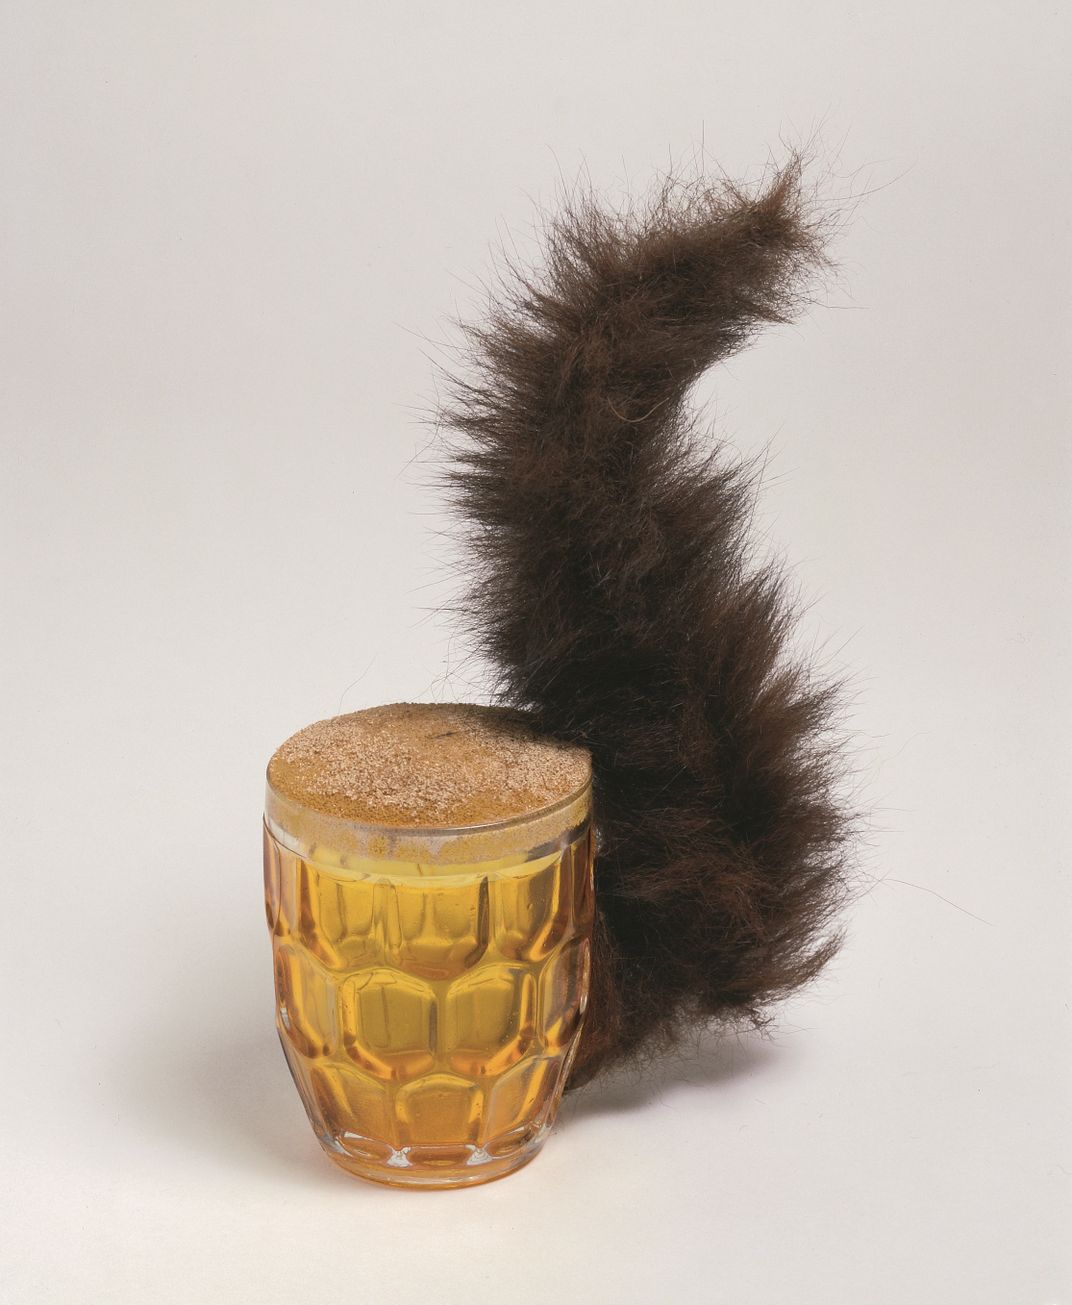 Meret Oppenheim, Squirrel, 1960/1969